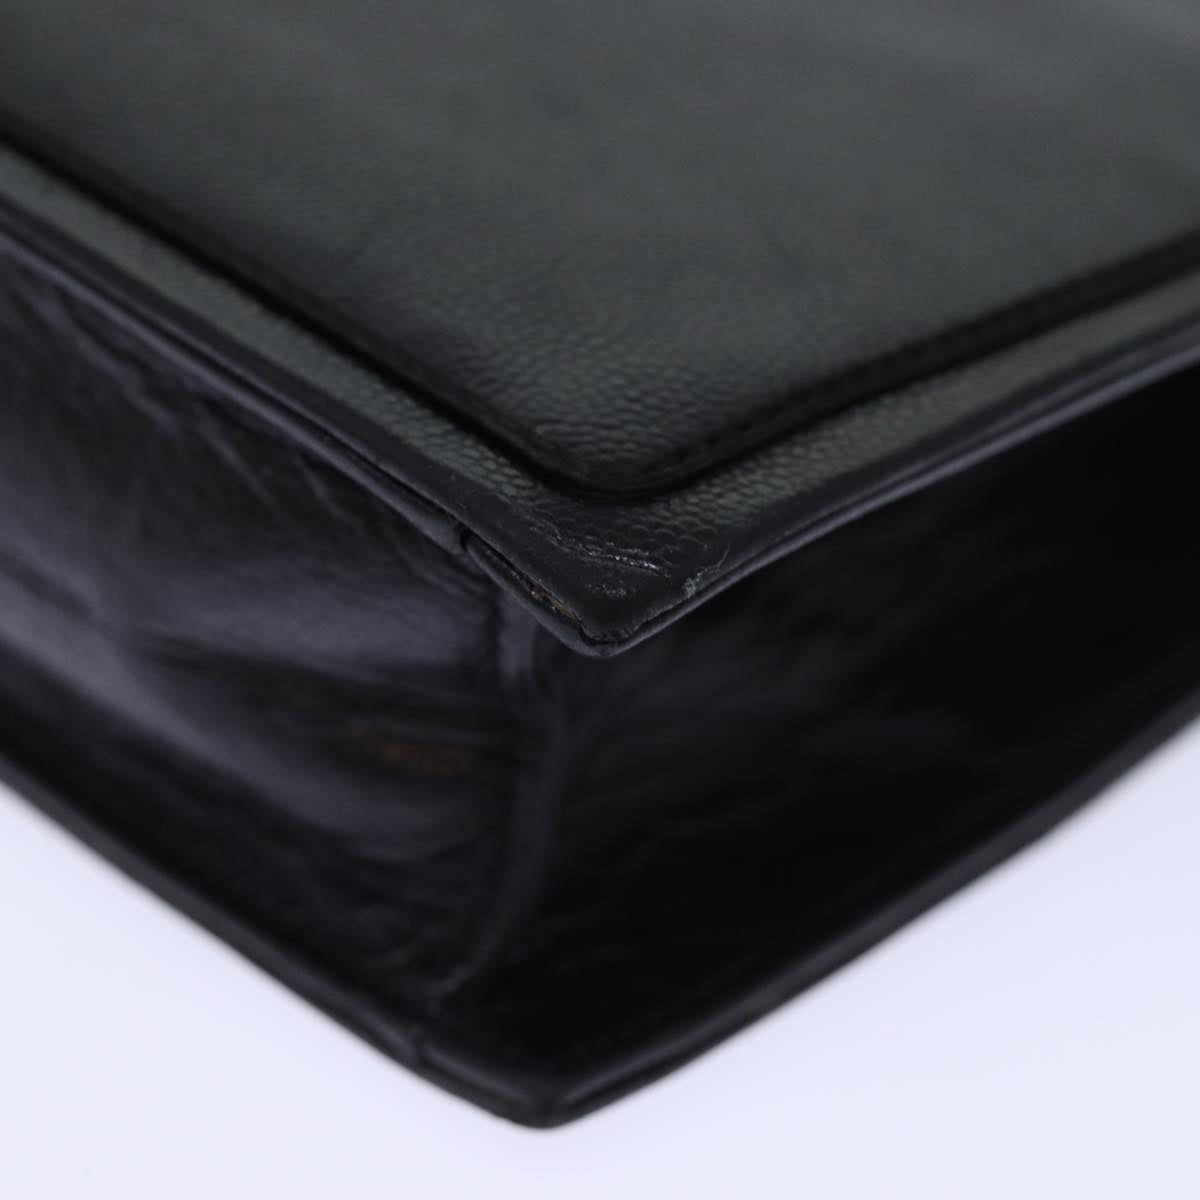 SAINT LAURENT Clutch Bag Leather Black Auth 74100